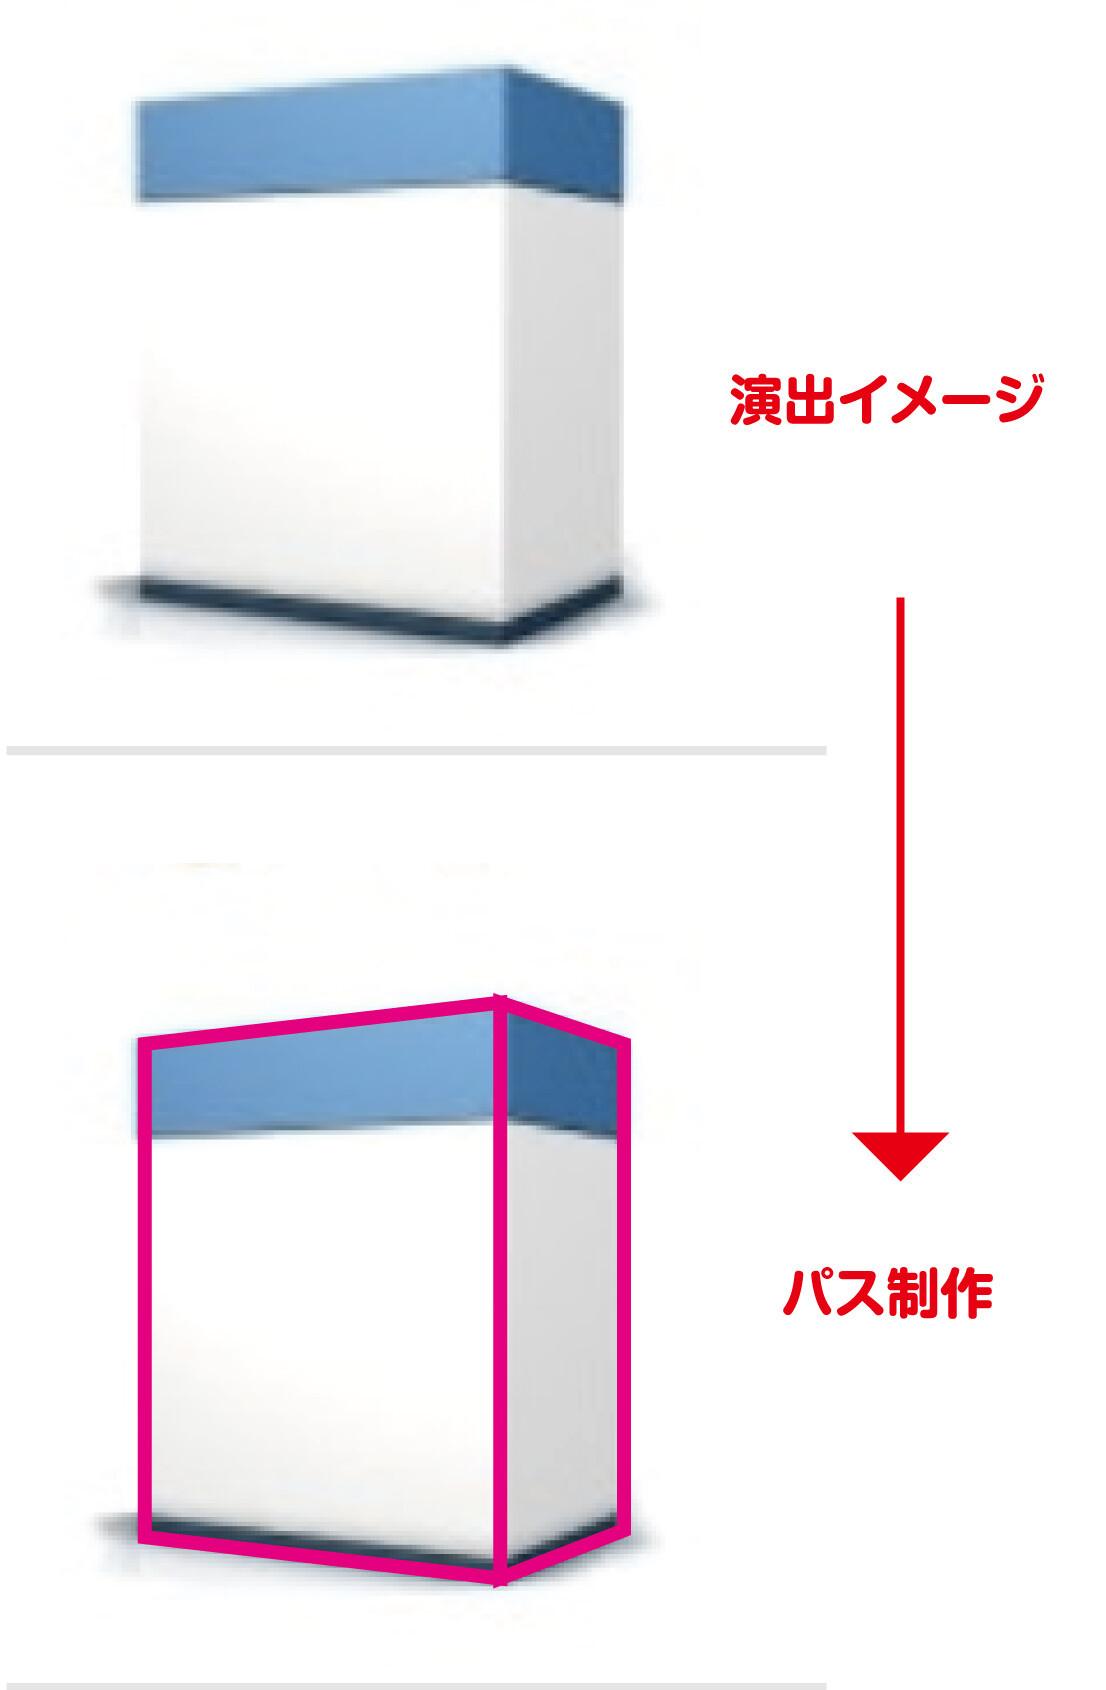 Illustratorでエンベロープ機能を利用して 商品のパッケージのような箱を演出する作り方 デザイナーブリッジ